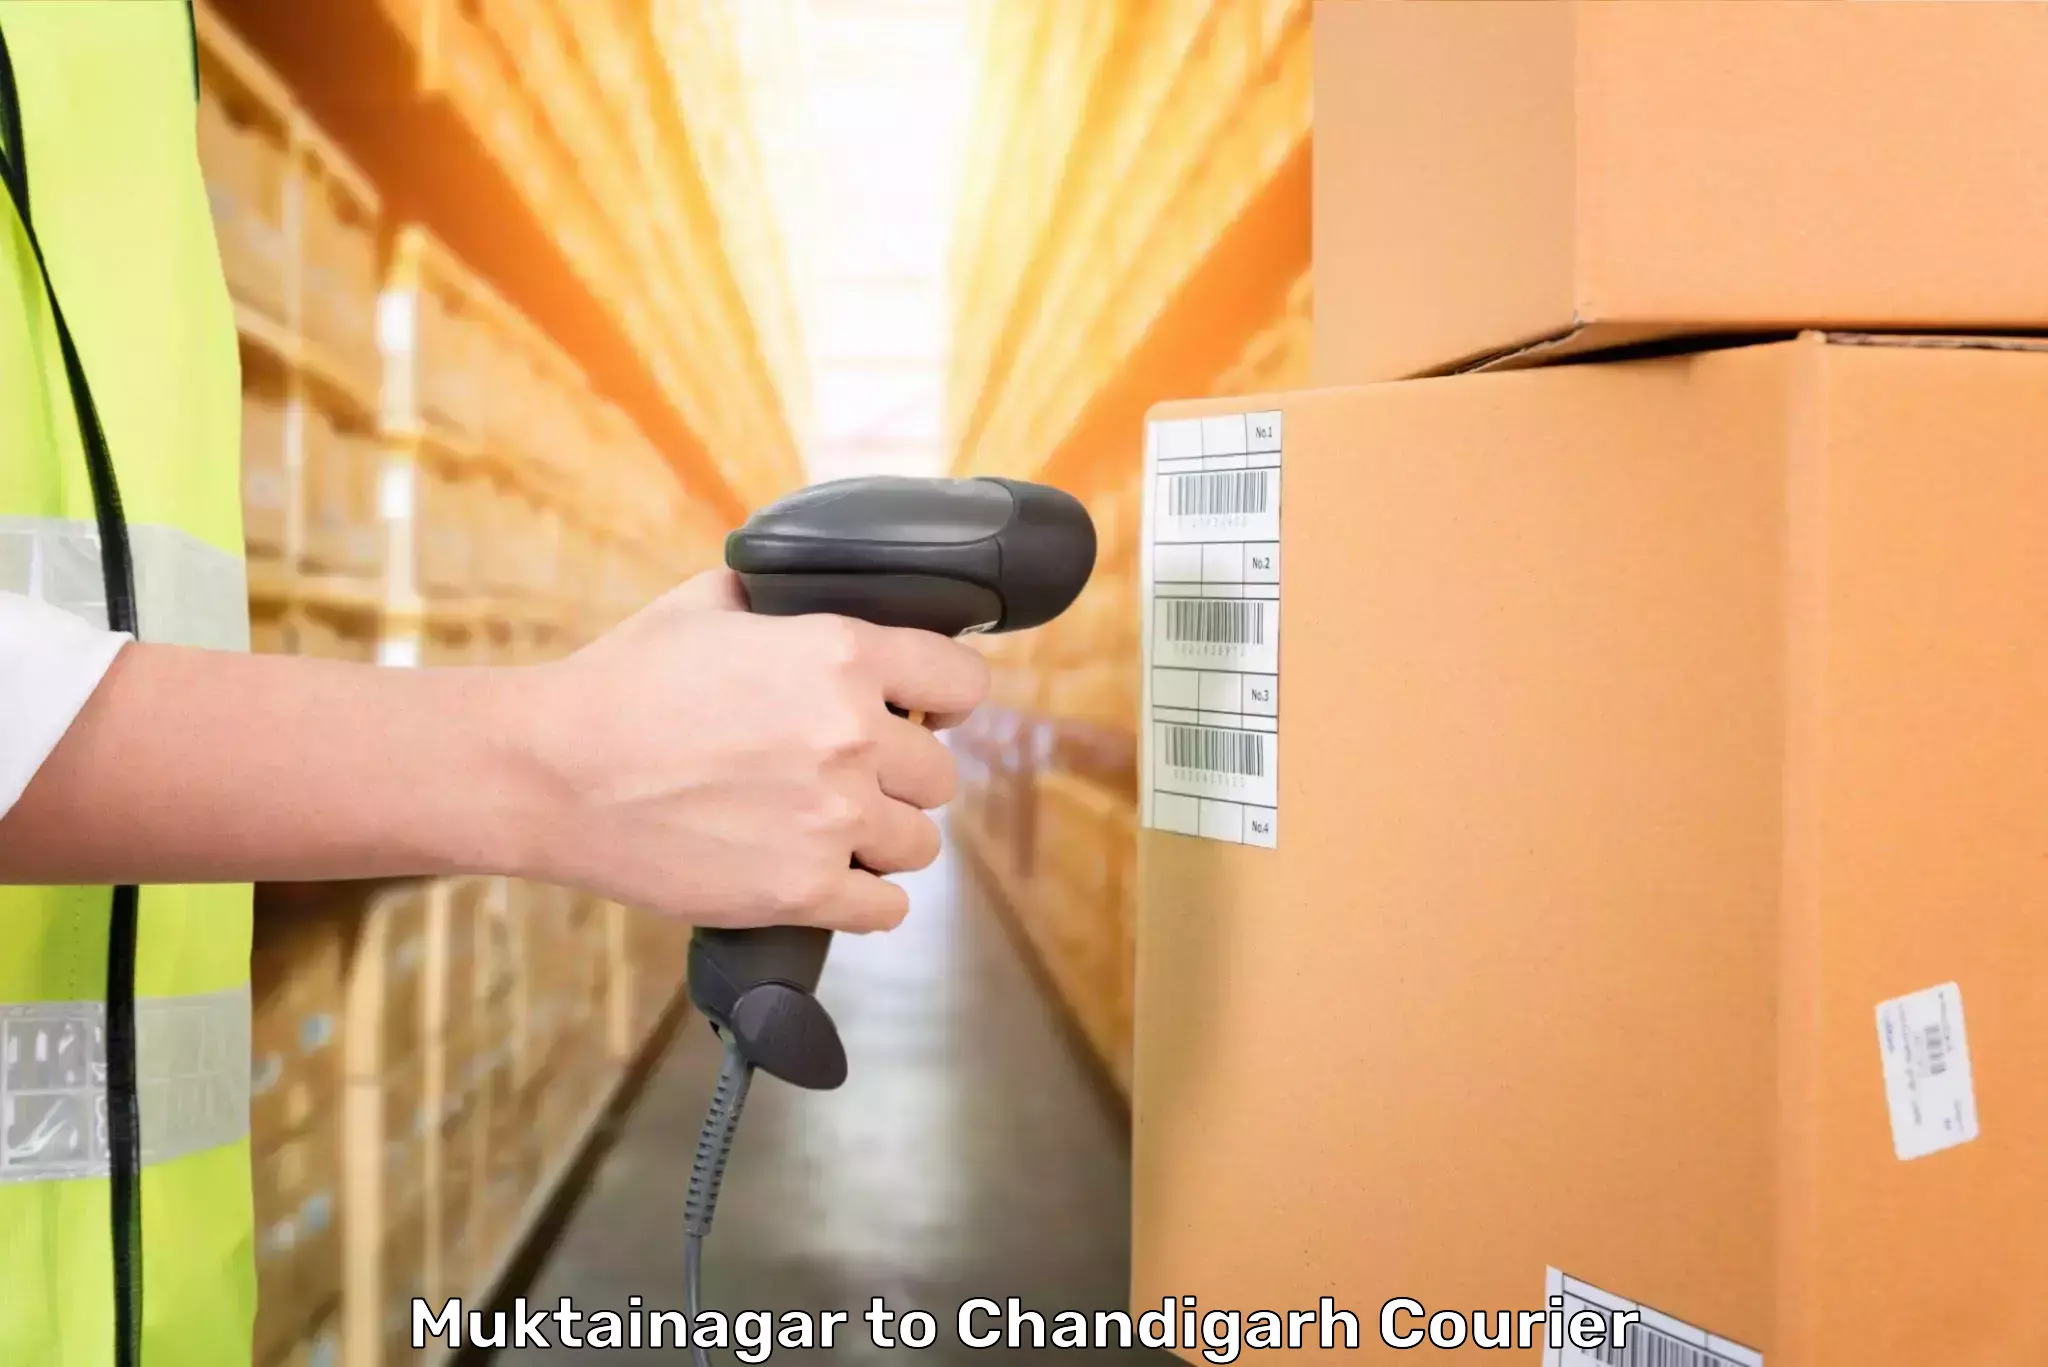 Baggage transport scheduler Muktainagar to Chandigarh